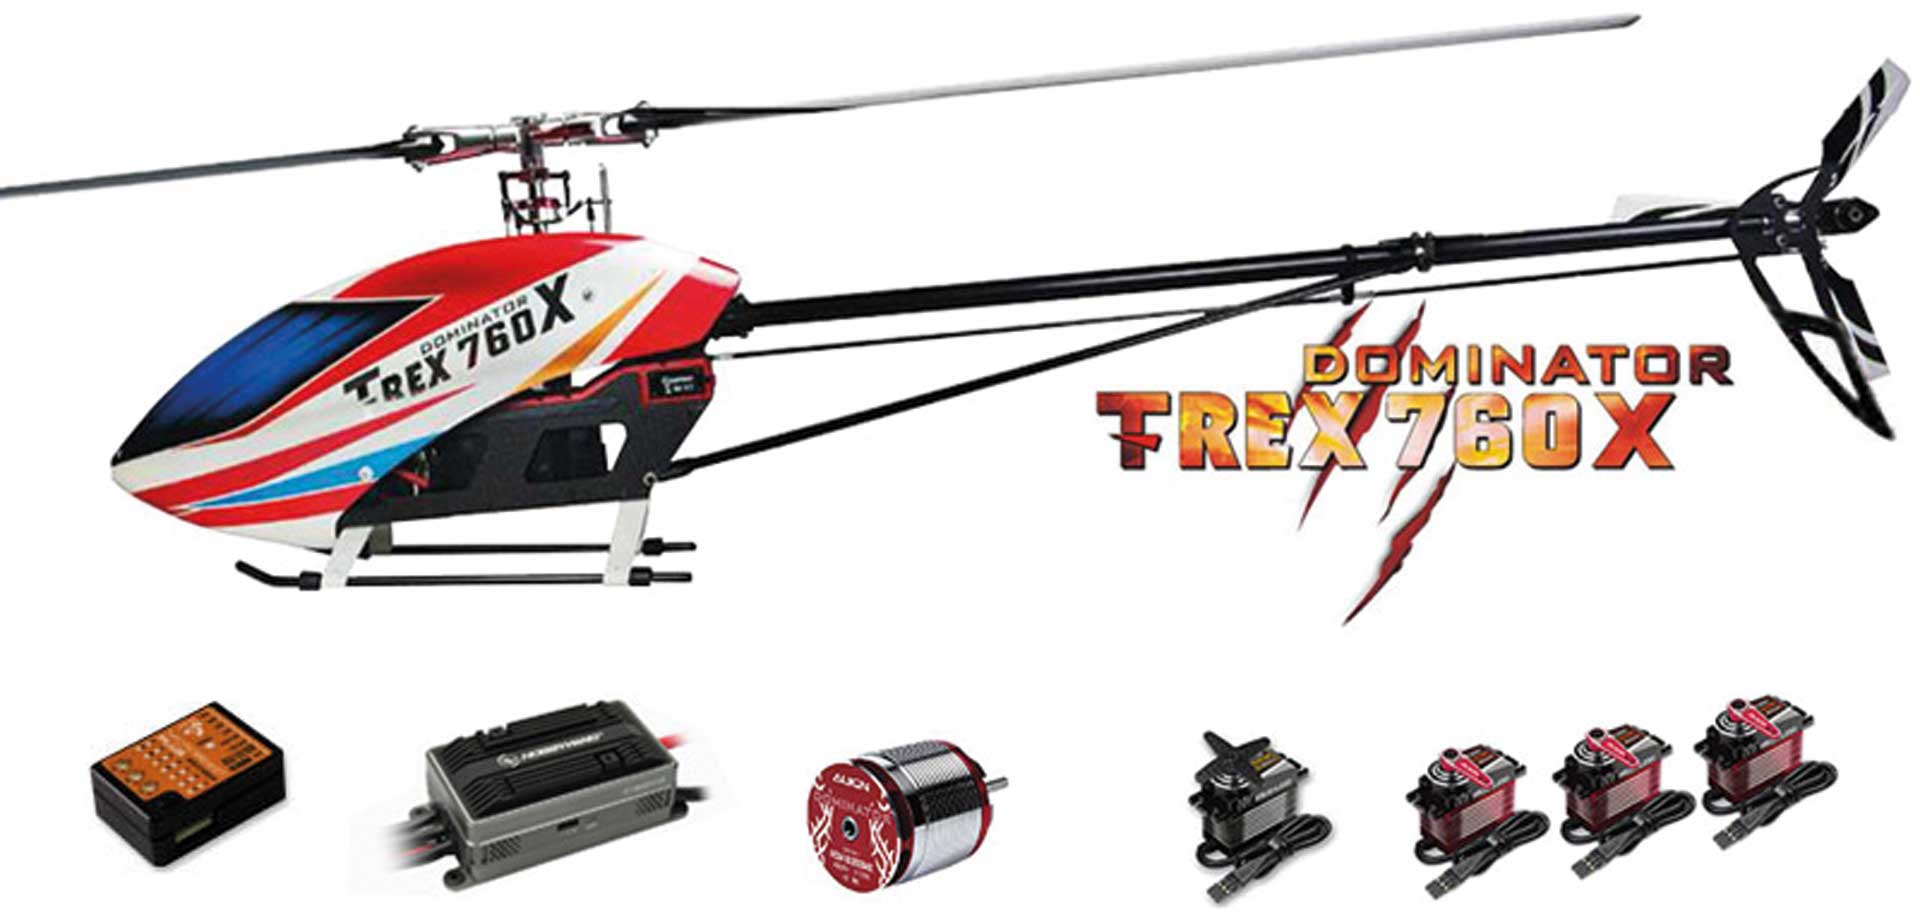 GARTT 700 DFC Gyro Holder  For Align Trex 700 RC Helicopter